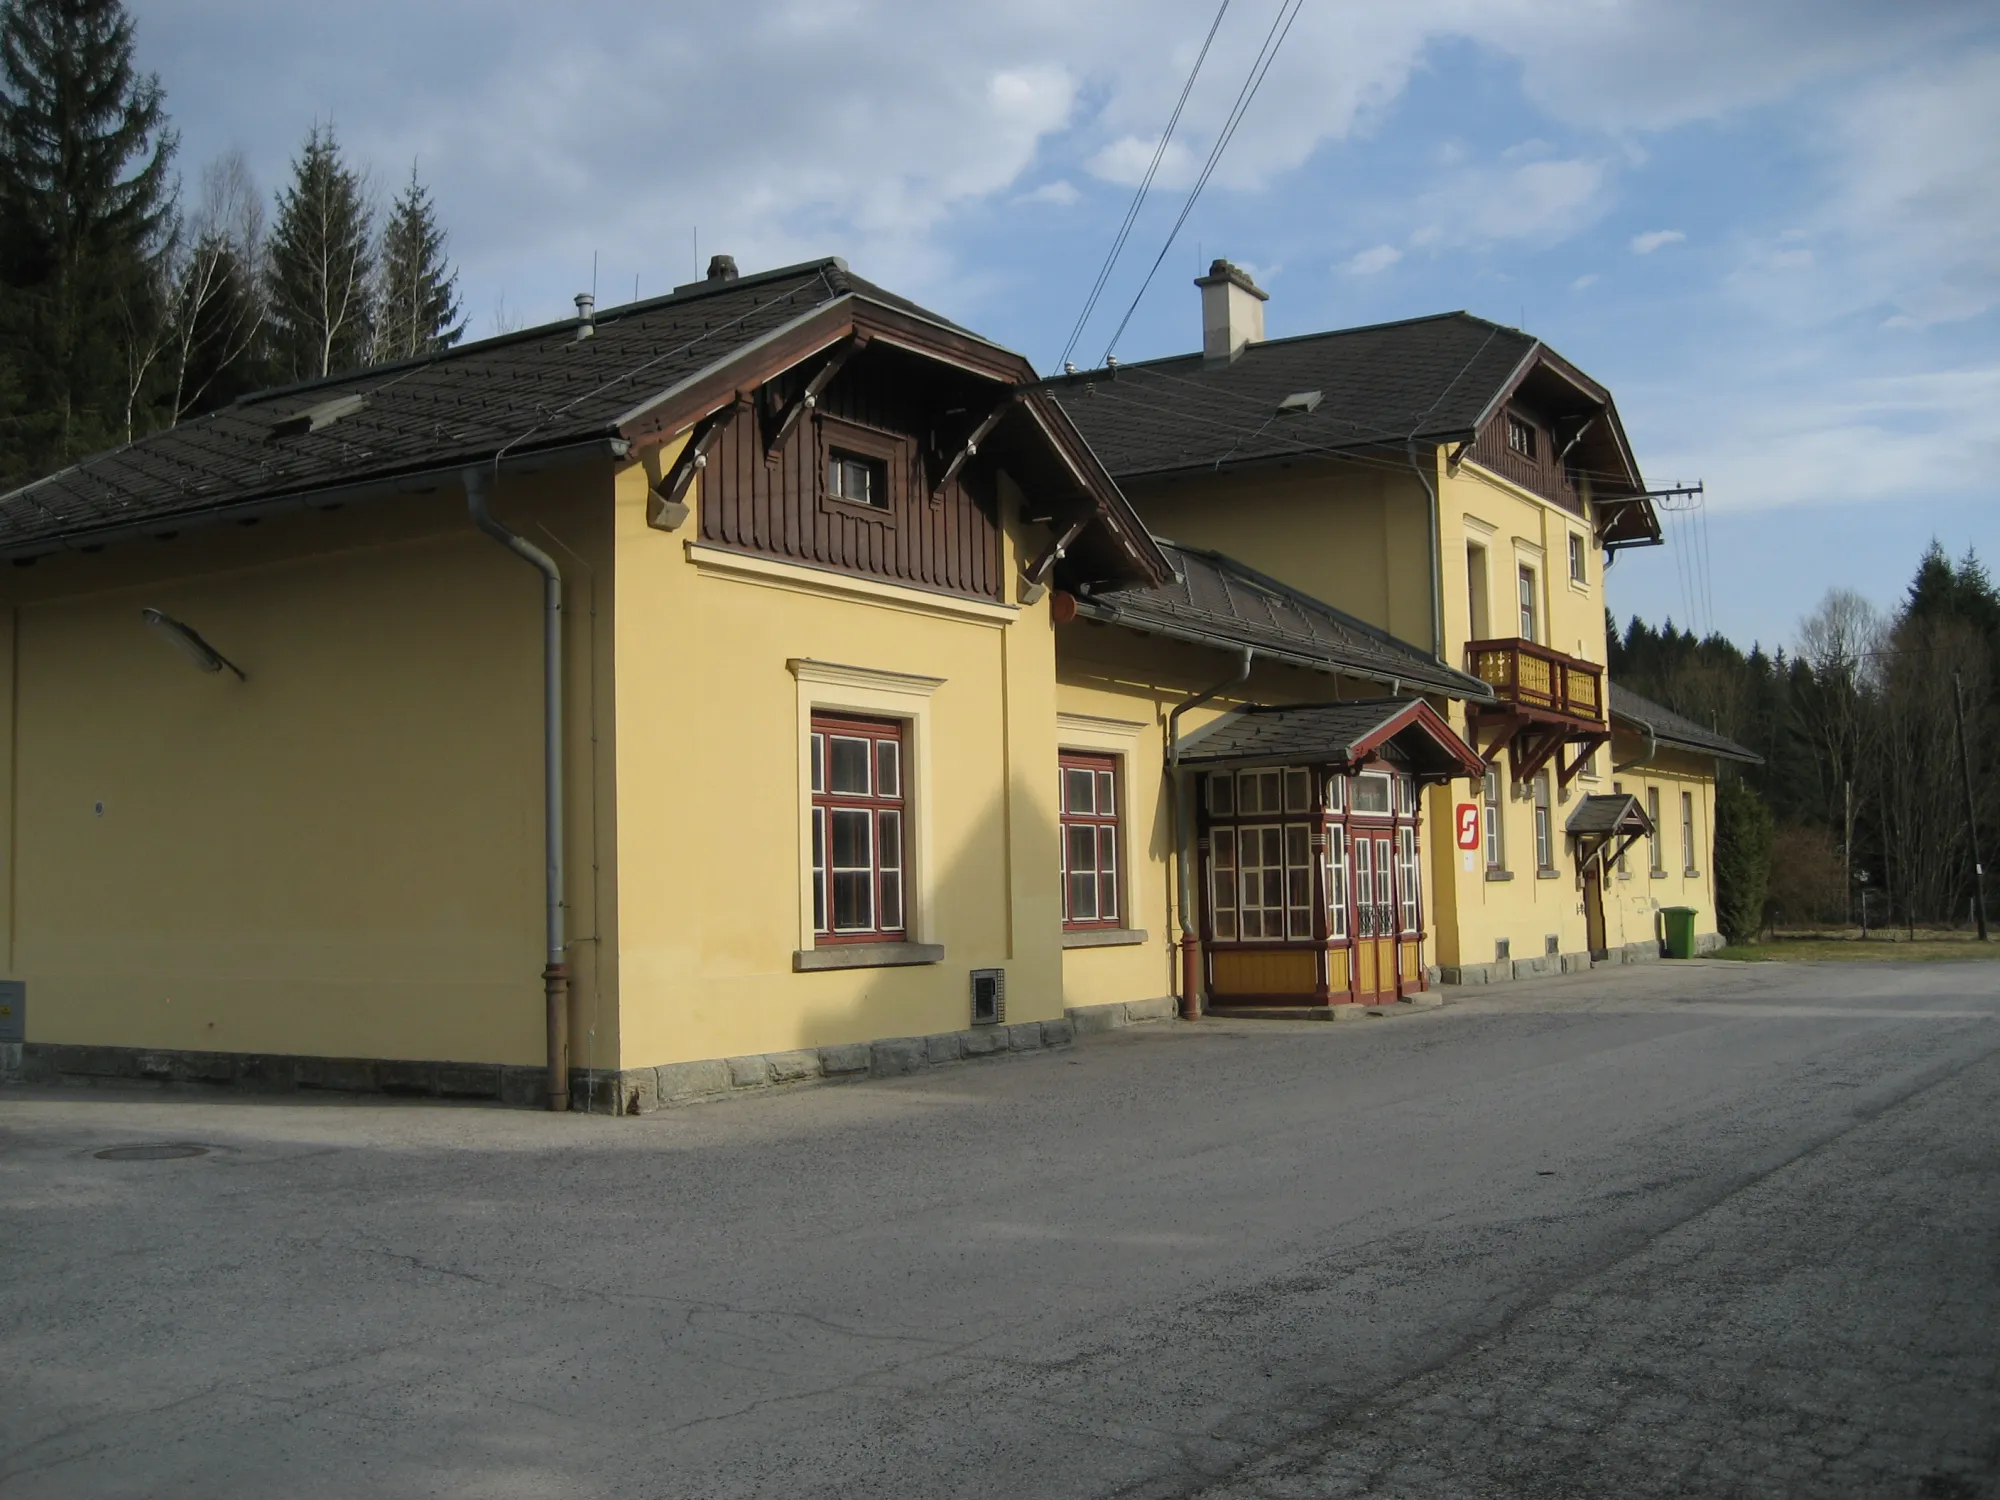 Photo showing: train station Ausschlag-Zöbern in Lower Austria